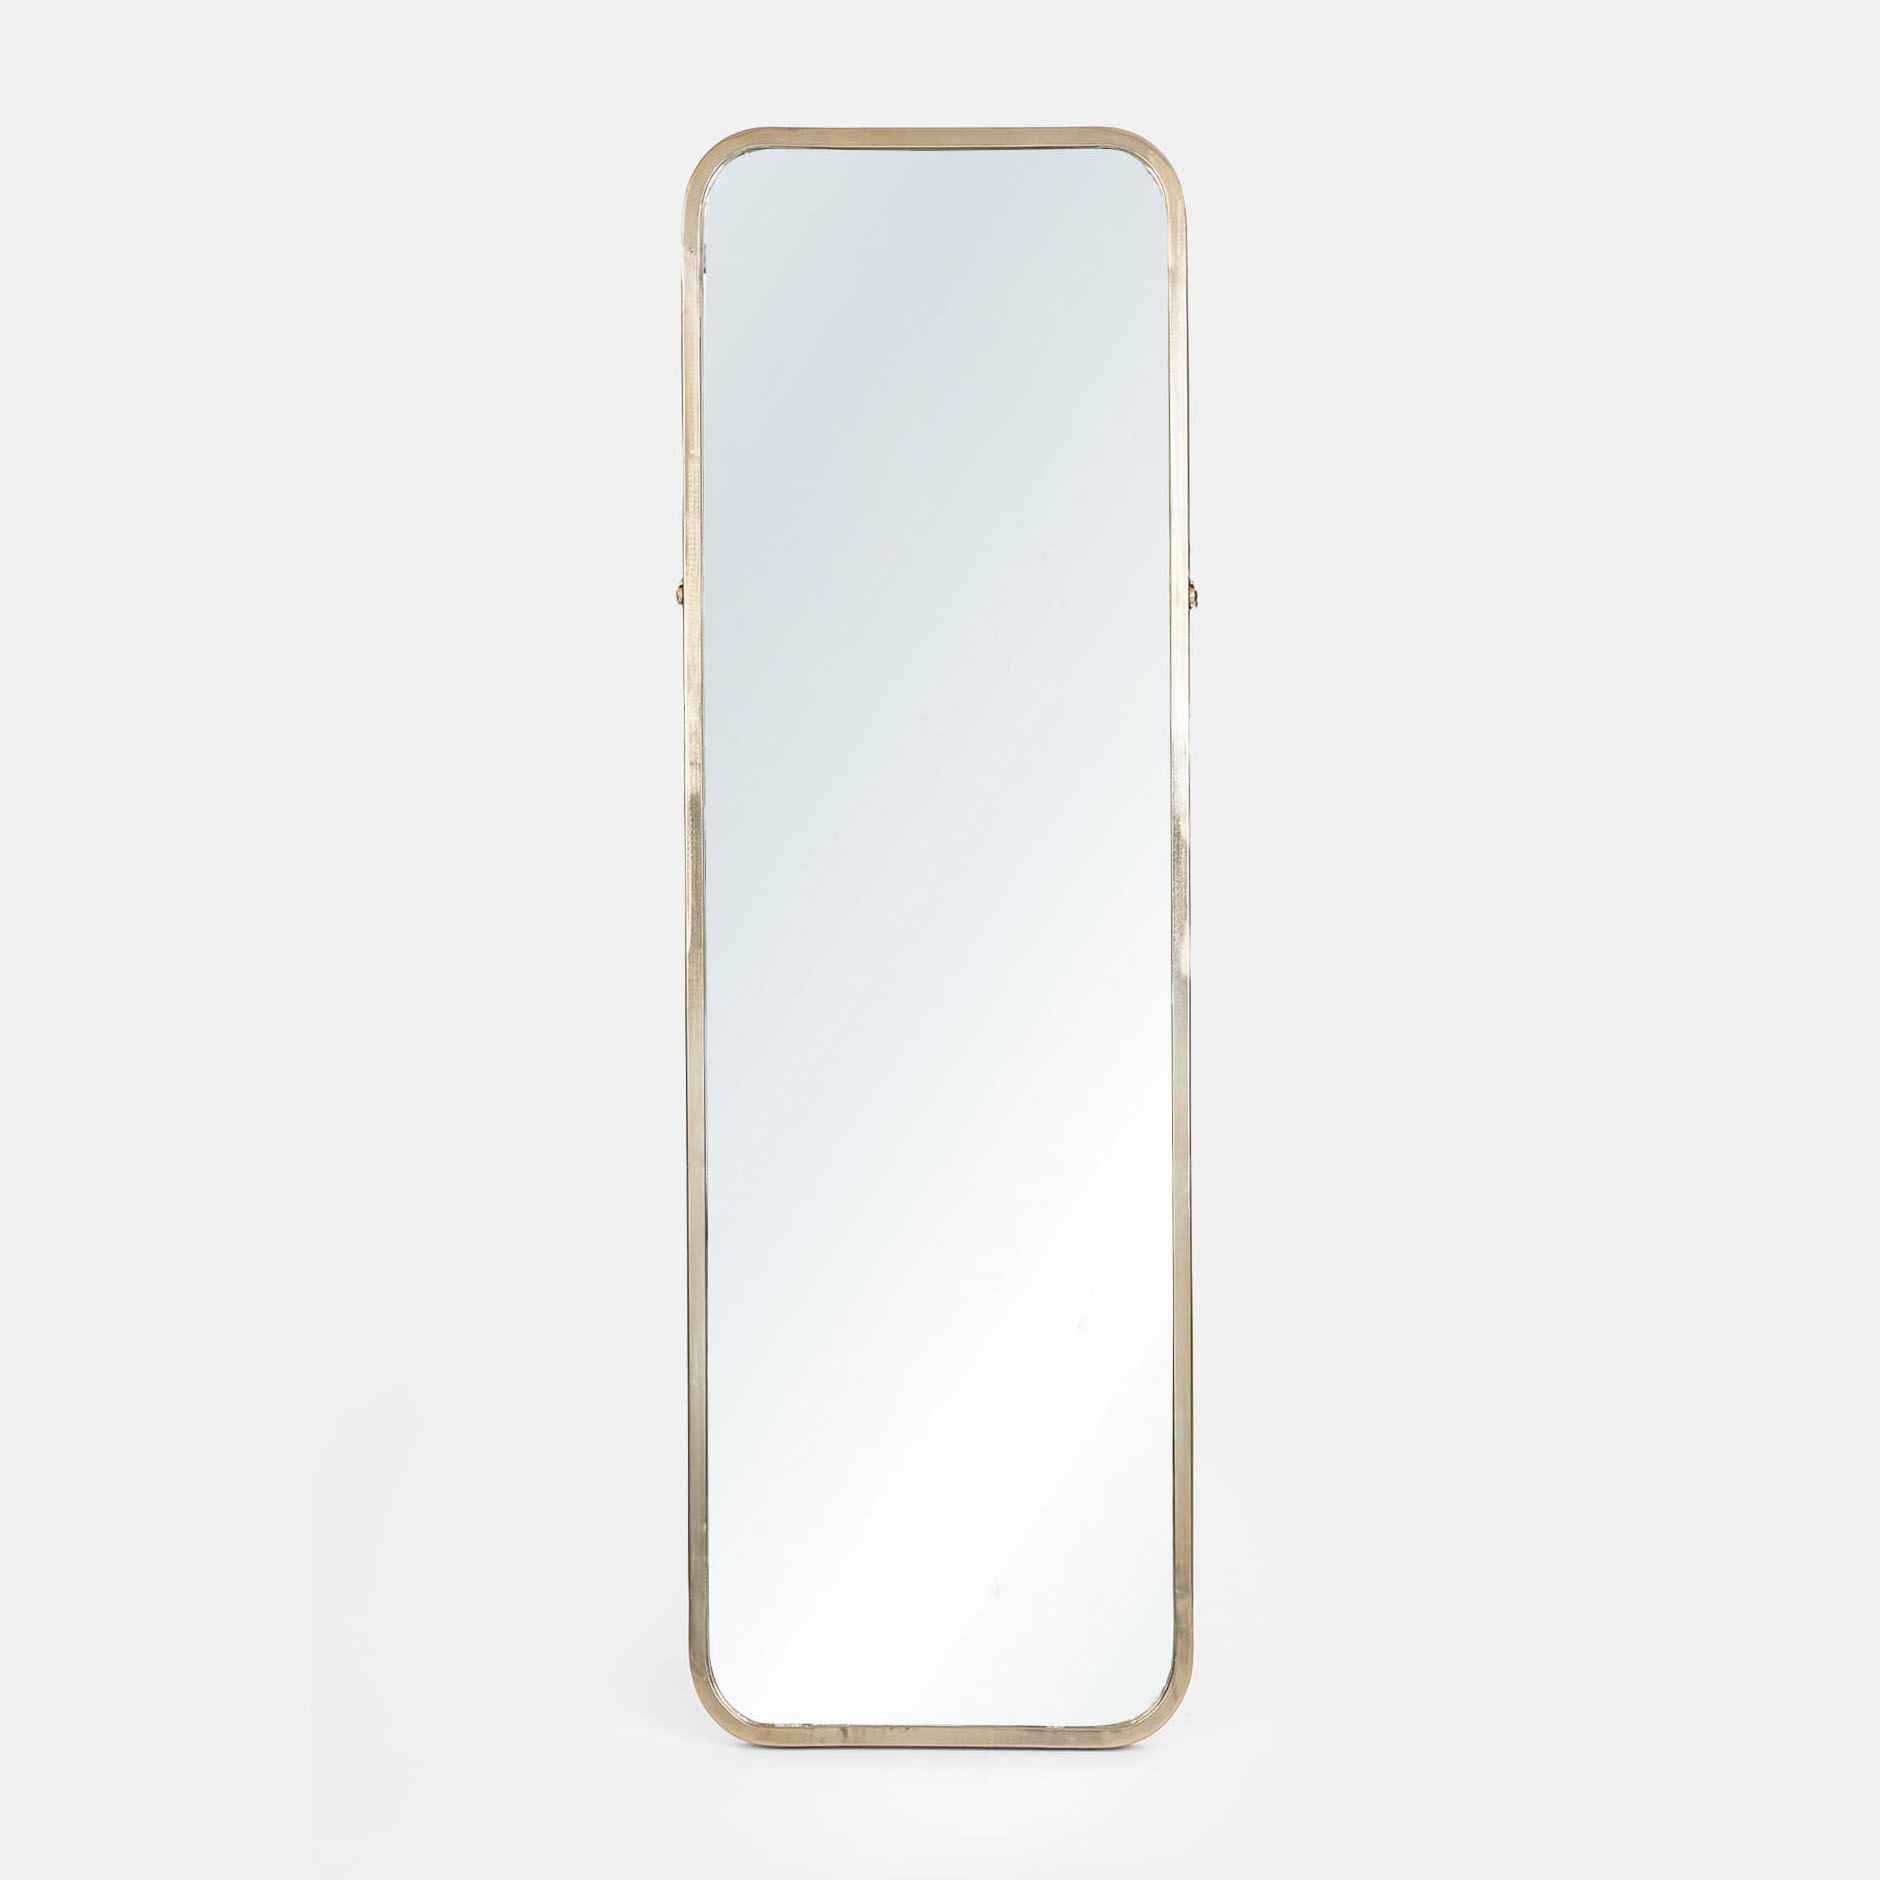 Golden Wall Mirror